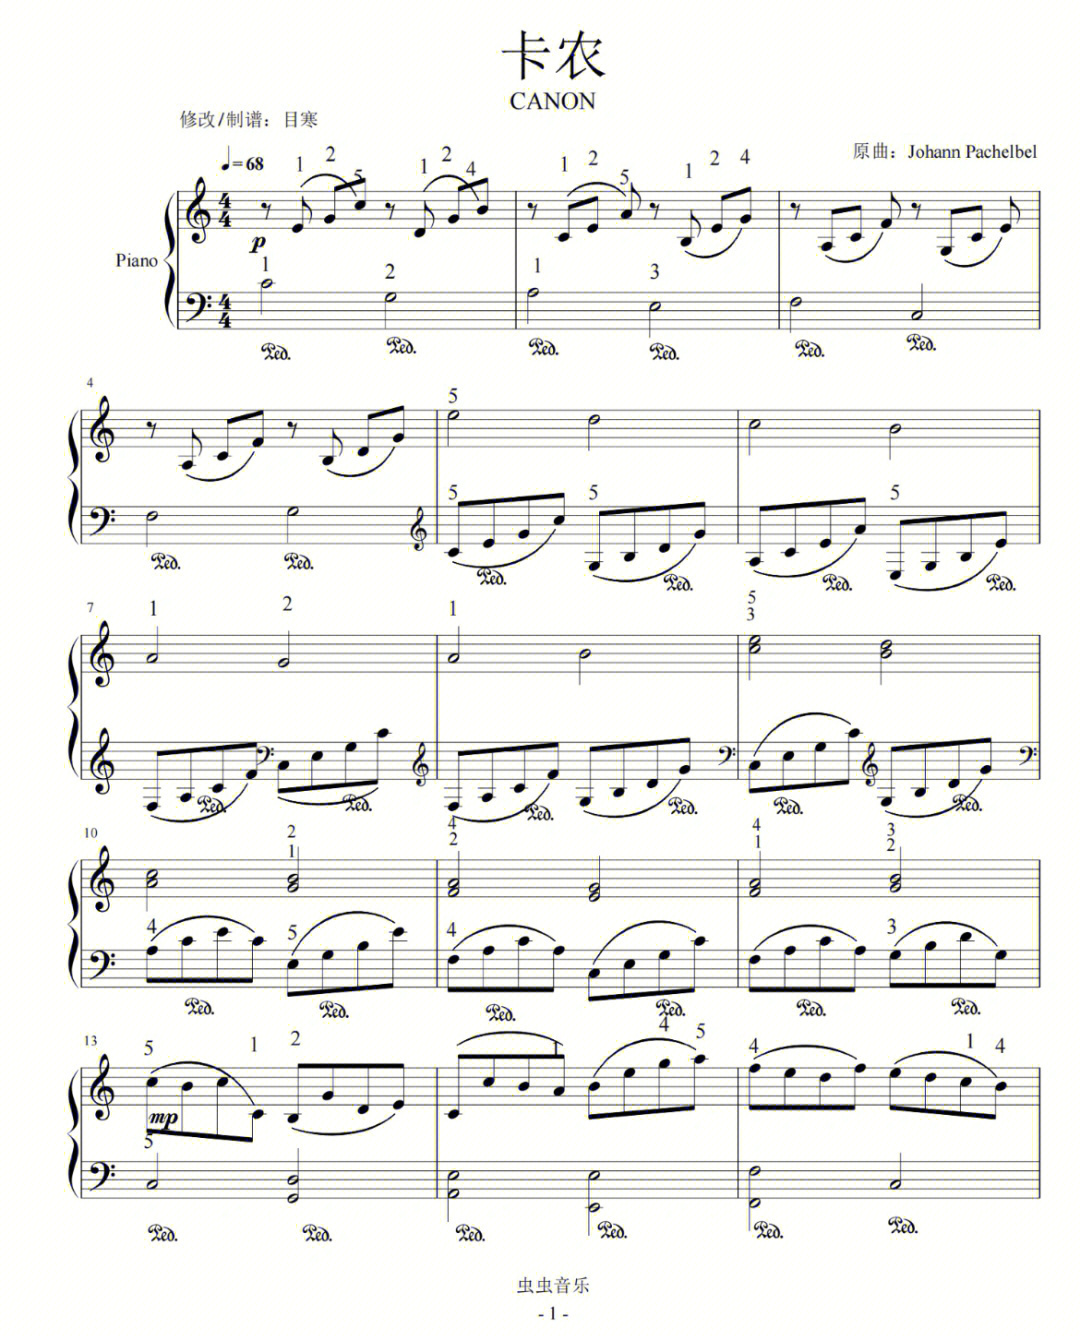 卡农钢琴谱简化版图片